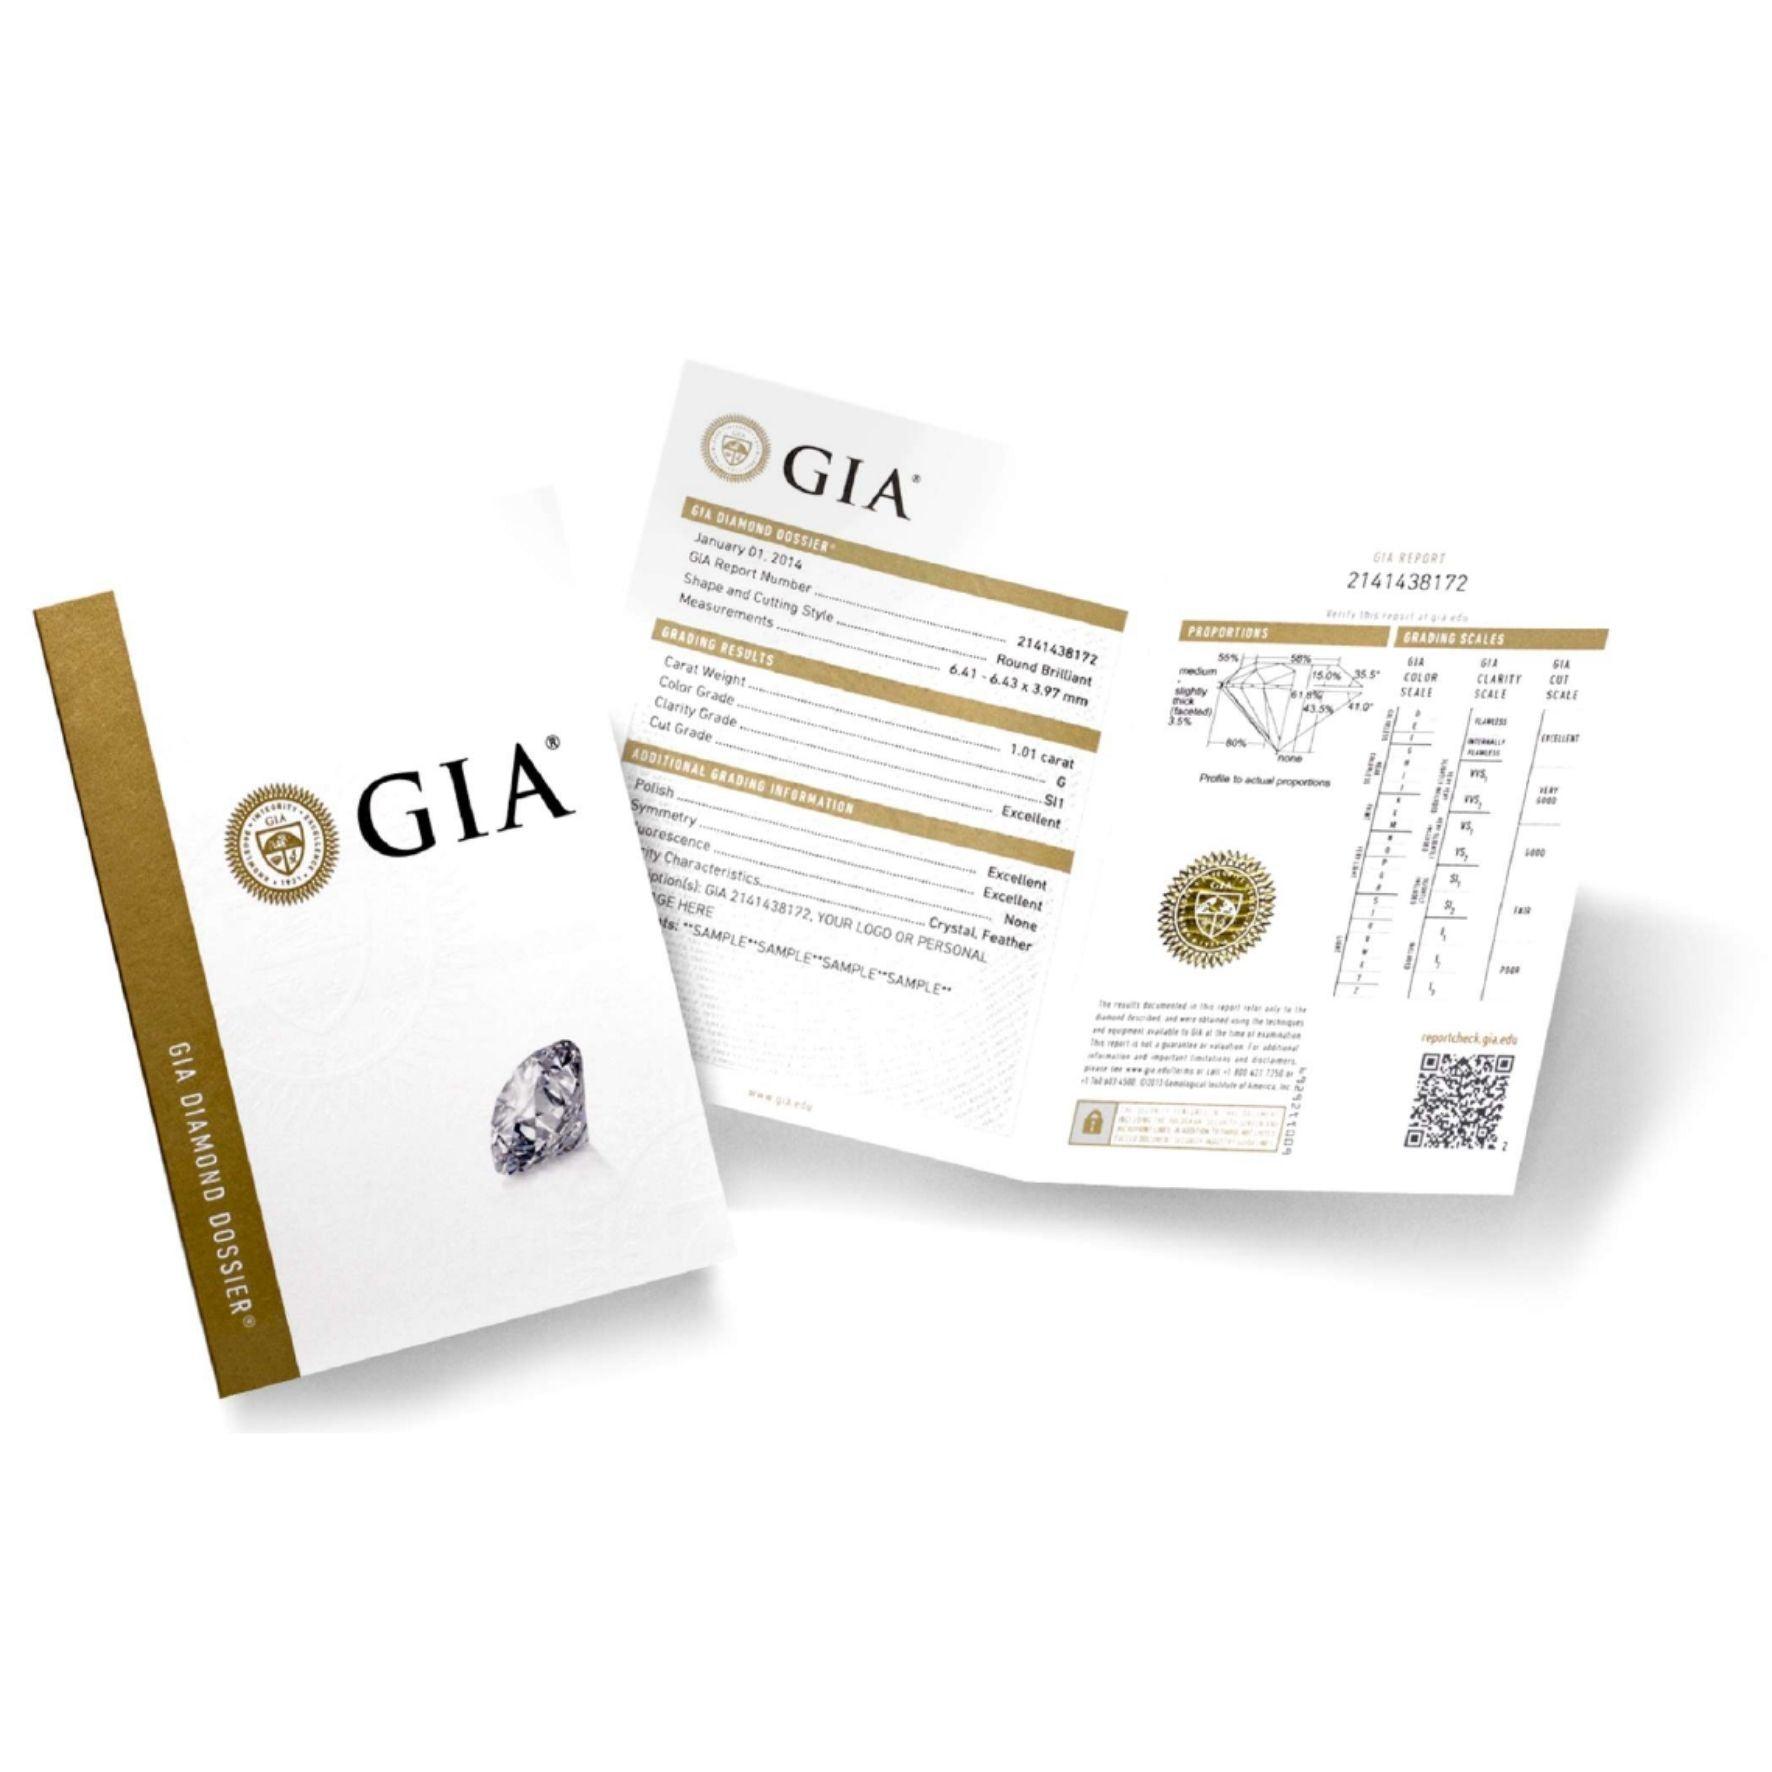 Πιστοποίηση διαμαντιών GIA για μονόπετρο δαχτυλίδι γάμου.